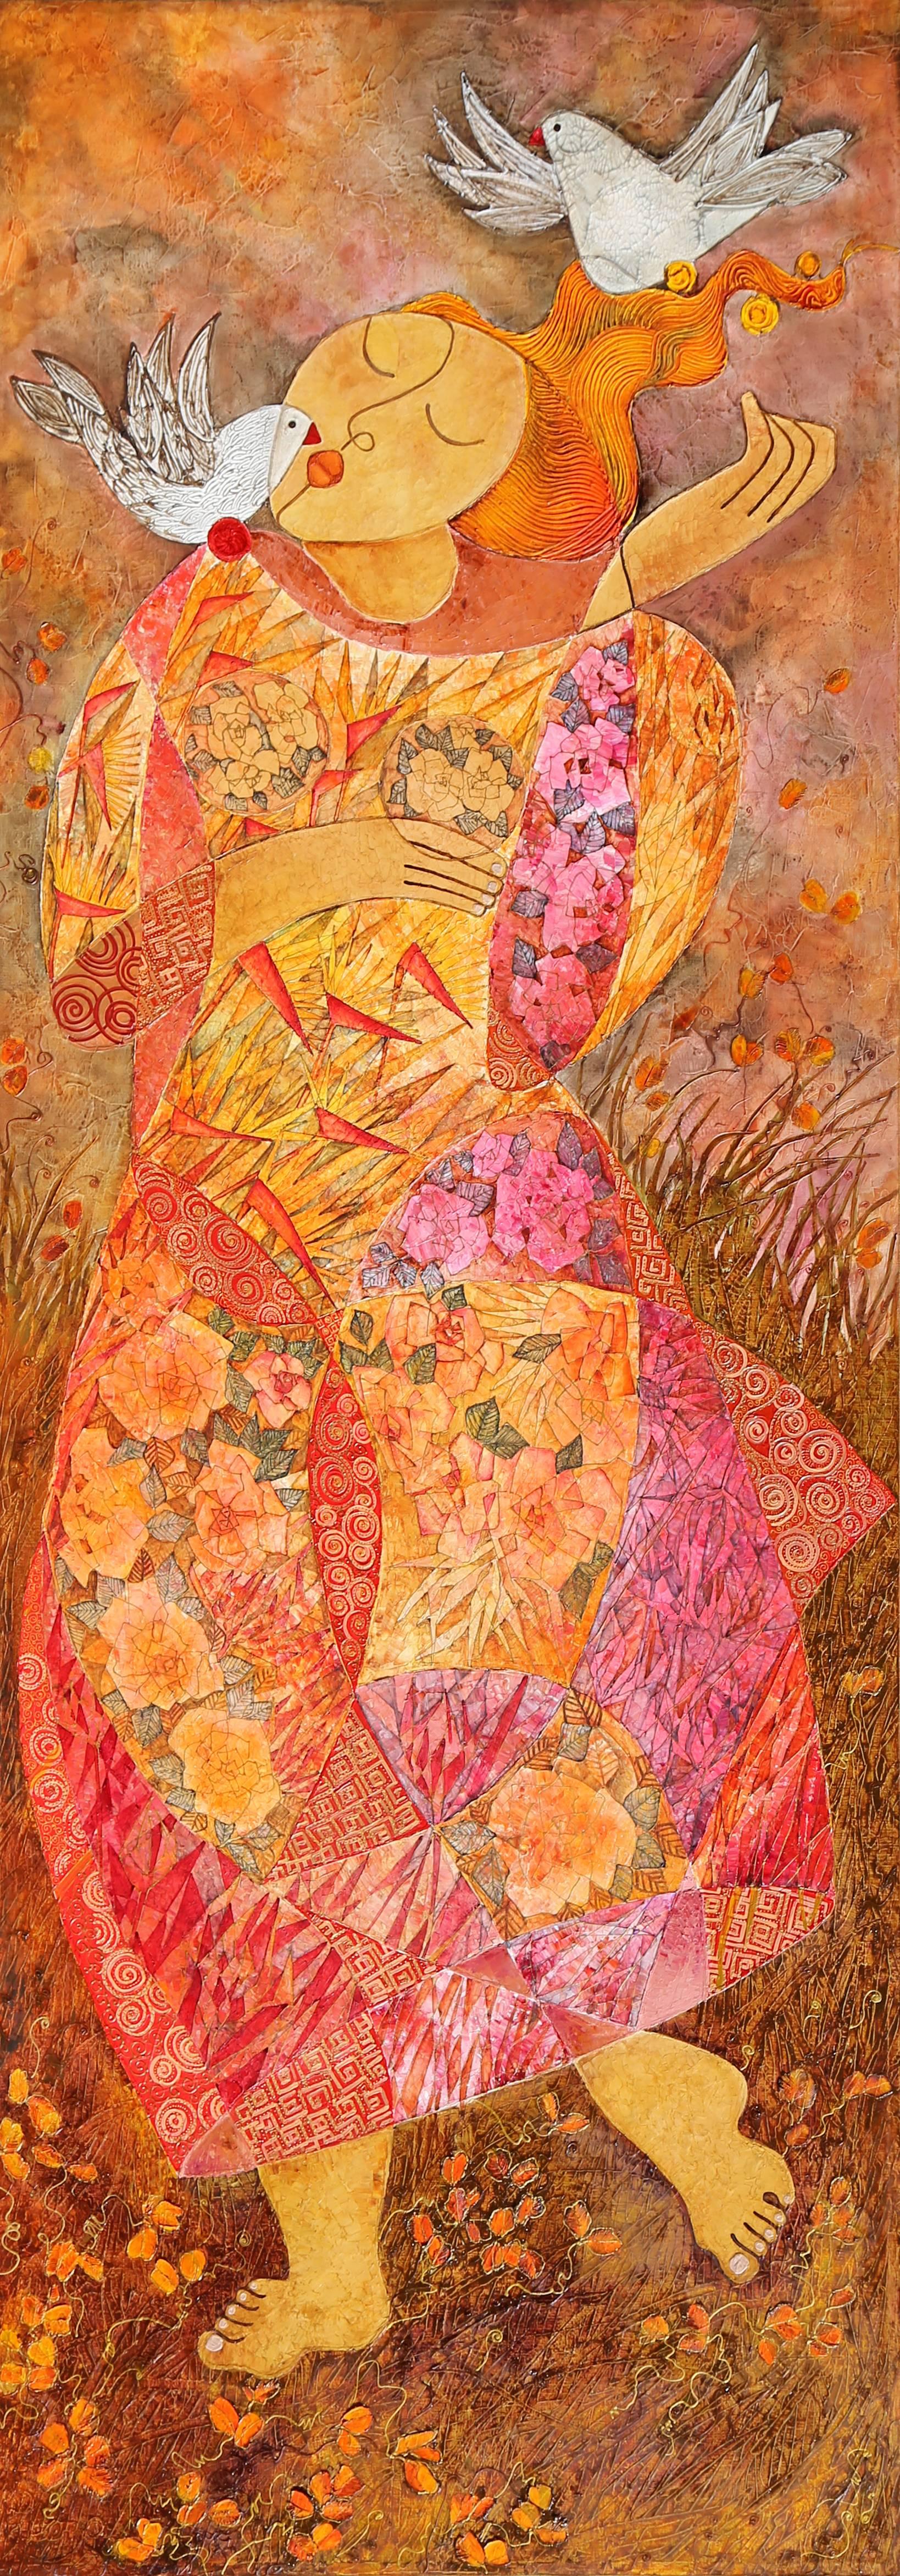 Peinture à l'huile monumentale « Woman with Doves » (Femme avec colombes) de Huong